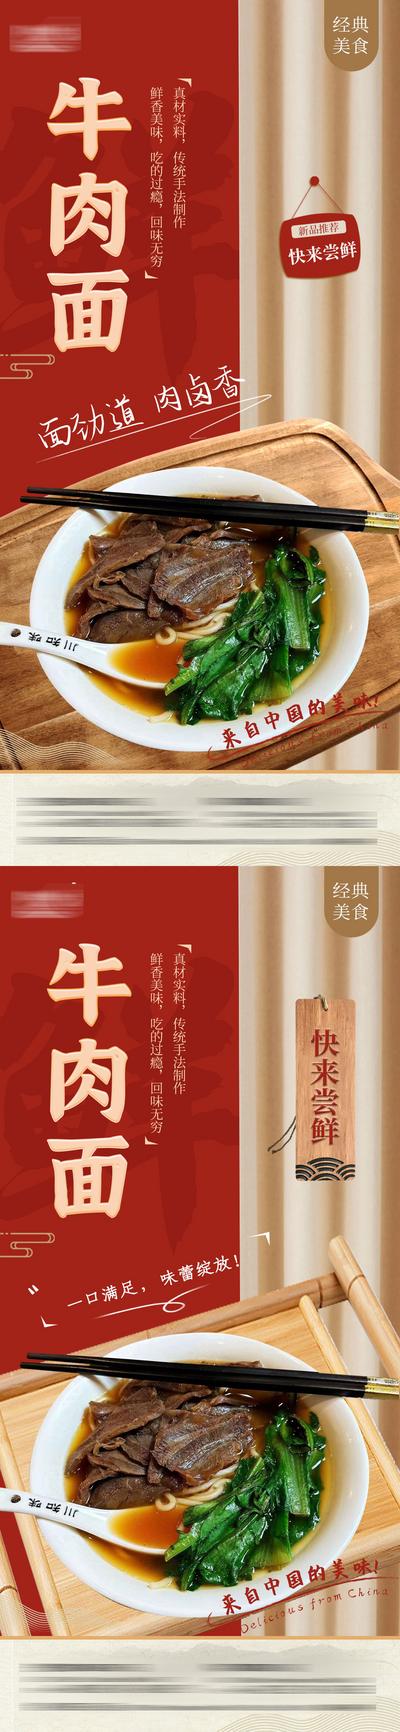 南门网 海报 餐饮 美食 牛肉面 新菜 推荐 托盘 中式 红金 系列